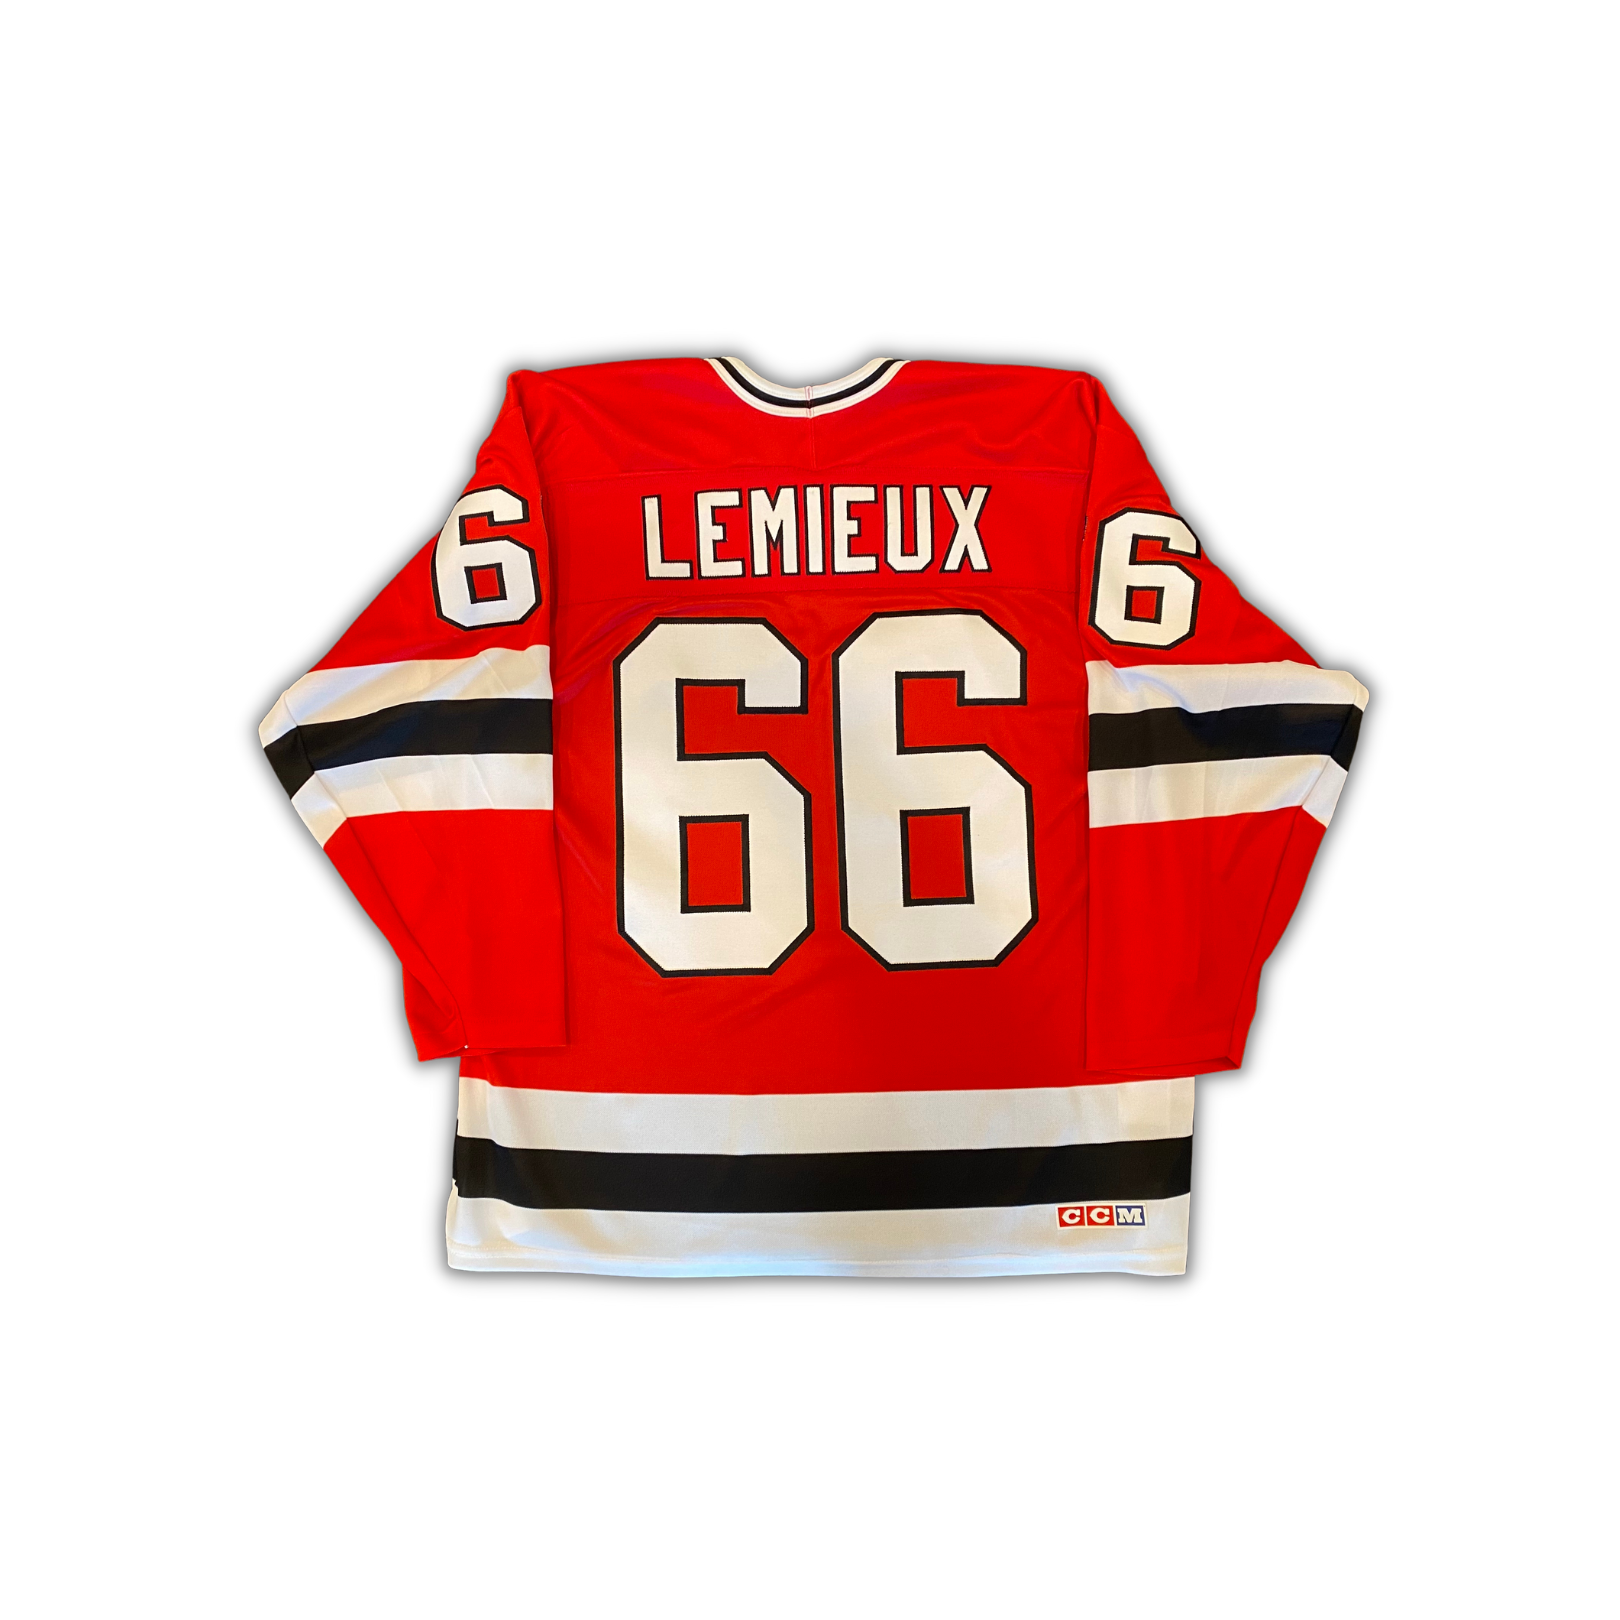 Sold at Auction: Authentic CCM NHL Mario Lemieux Jersey